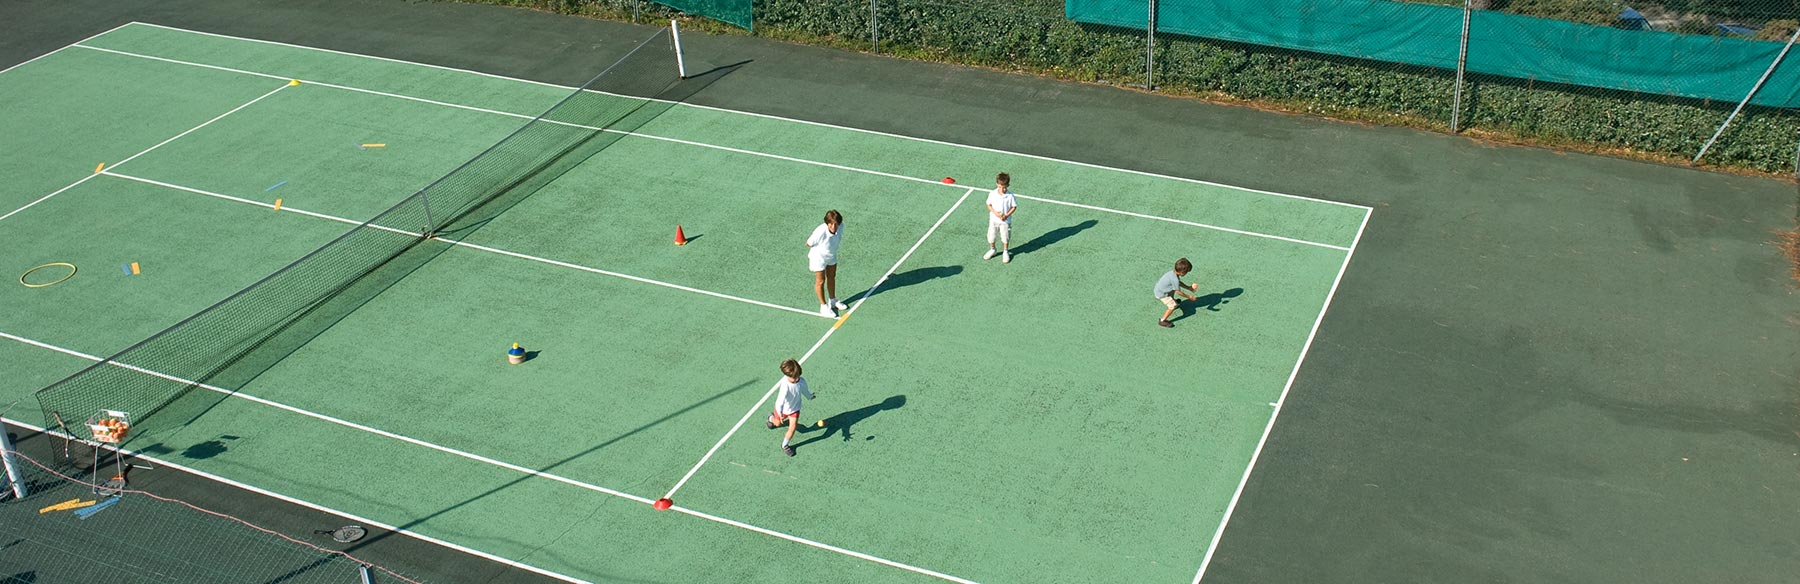 Une monitrice de tennis donne un cours à trois enfants.